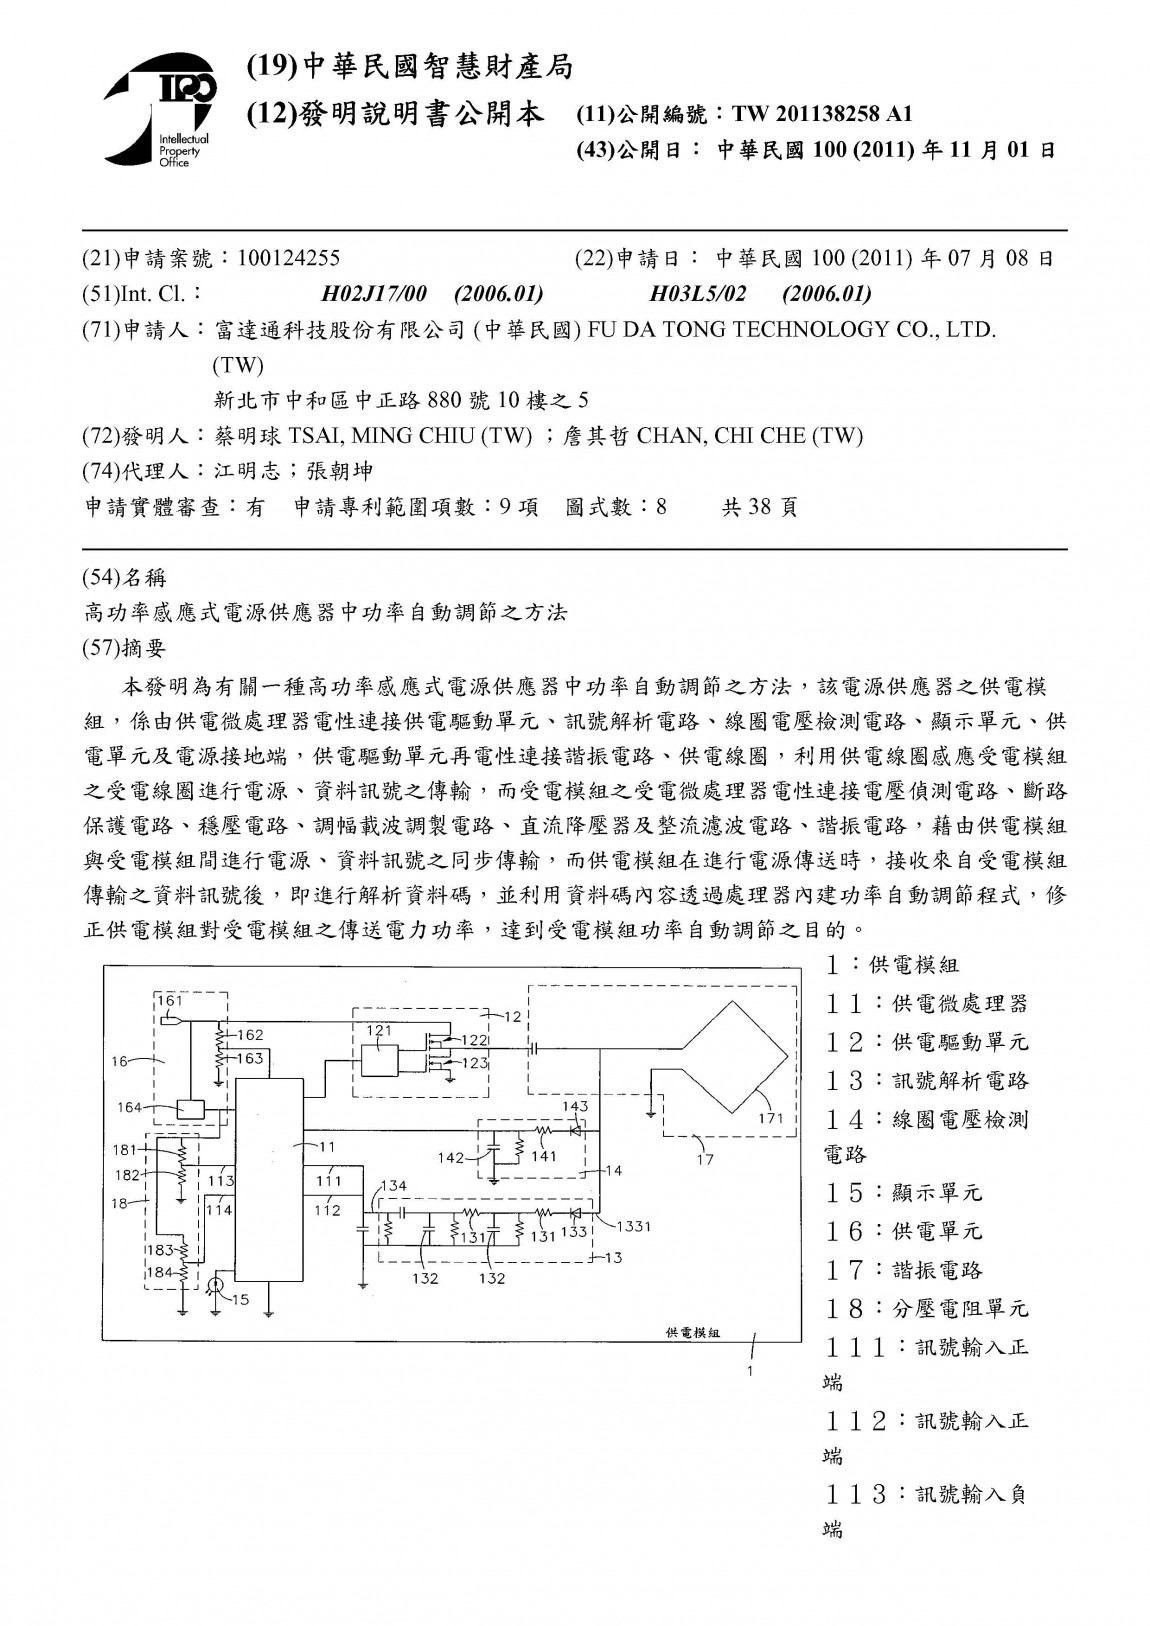 富達通專利12-高功率感應式電源供應器中功率自動調節之方法(台灣)201138258